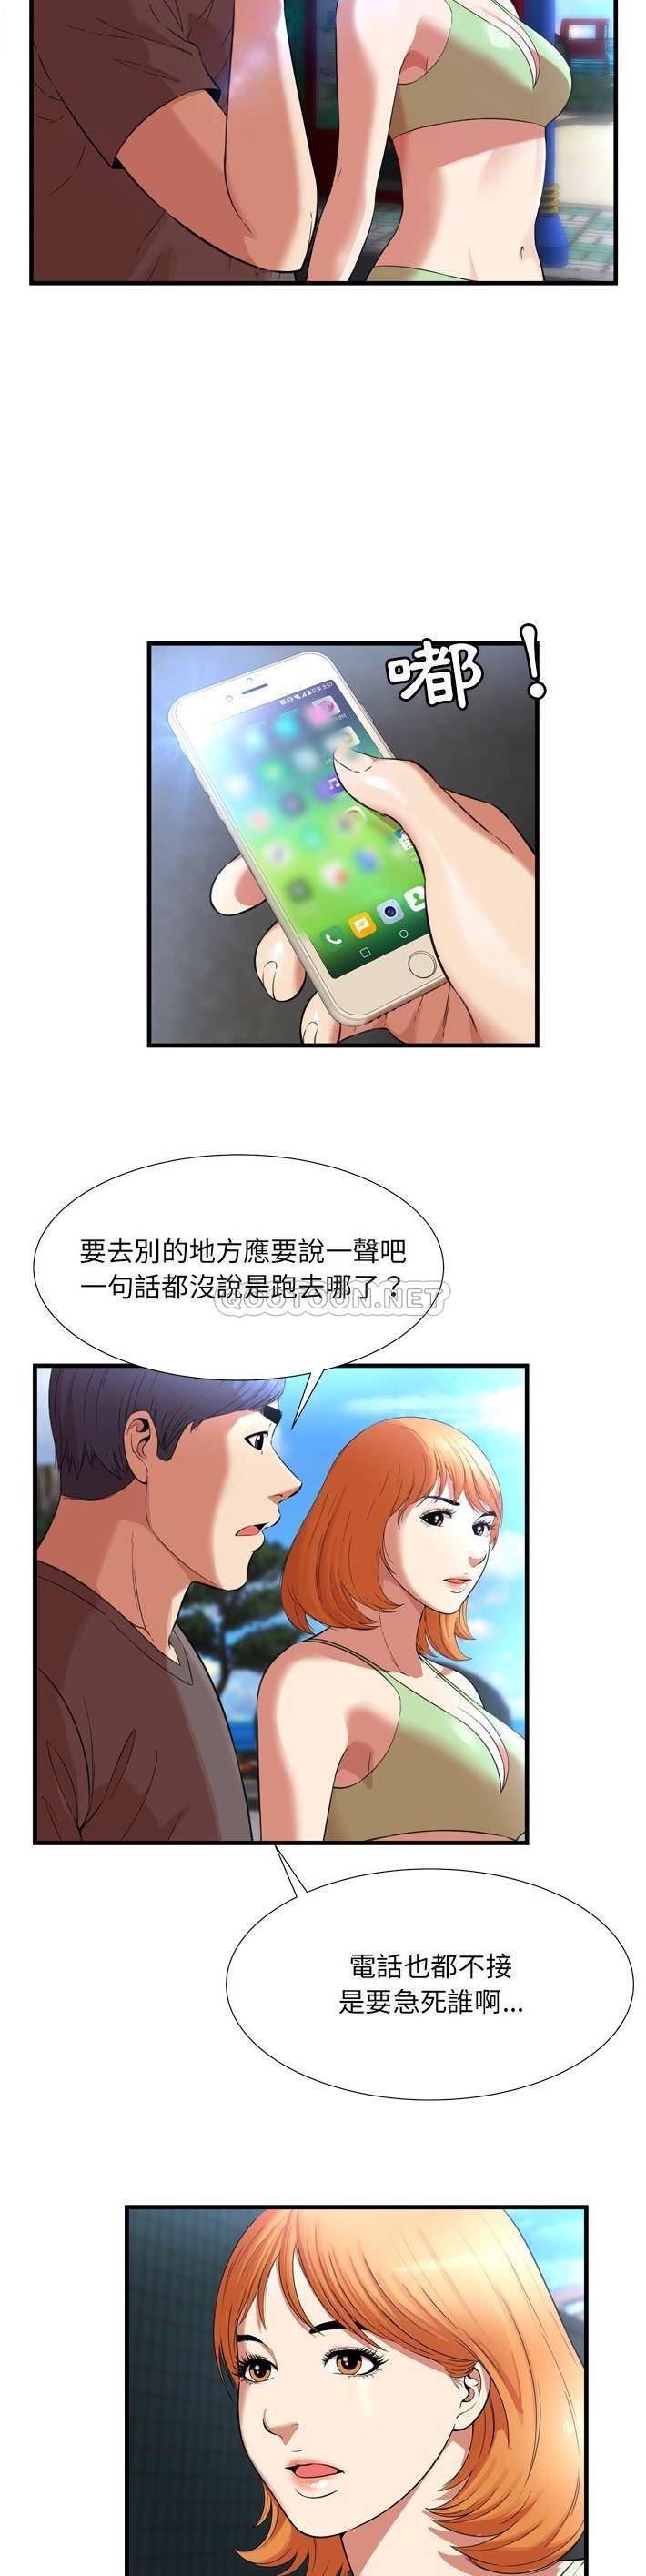 韩国污漫画 深淵 第23话 2